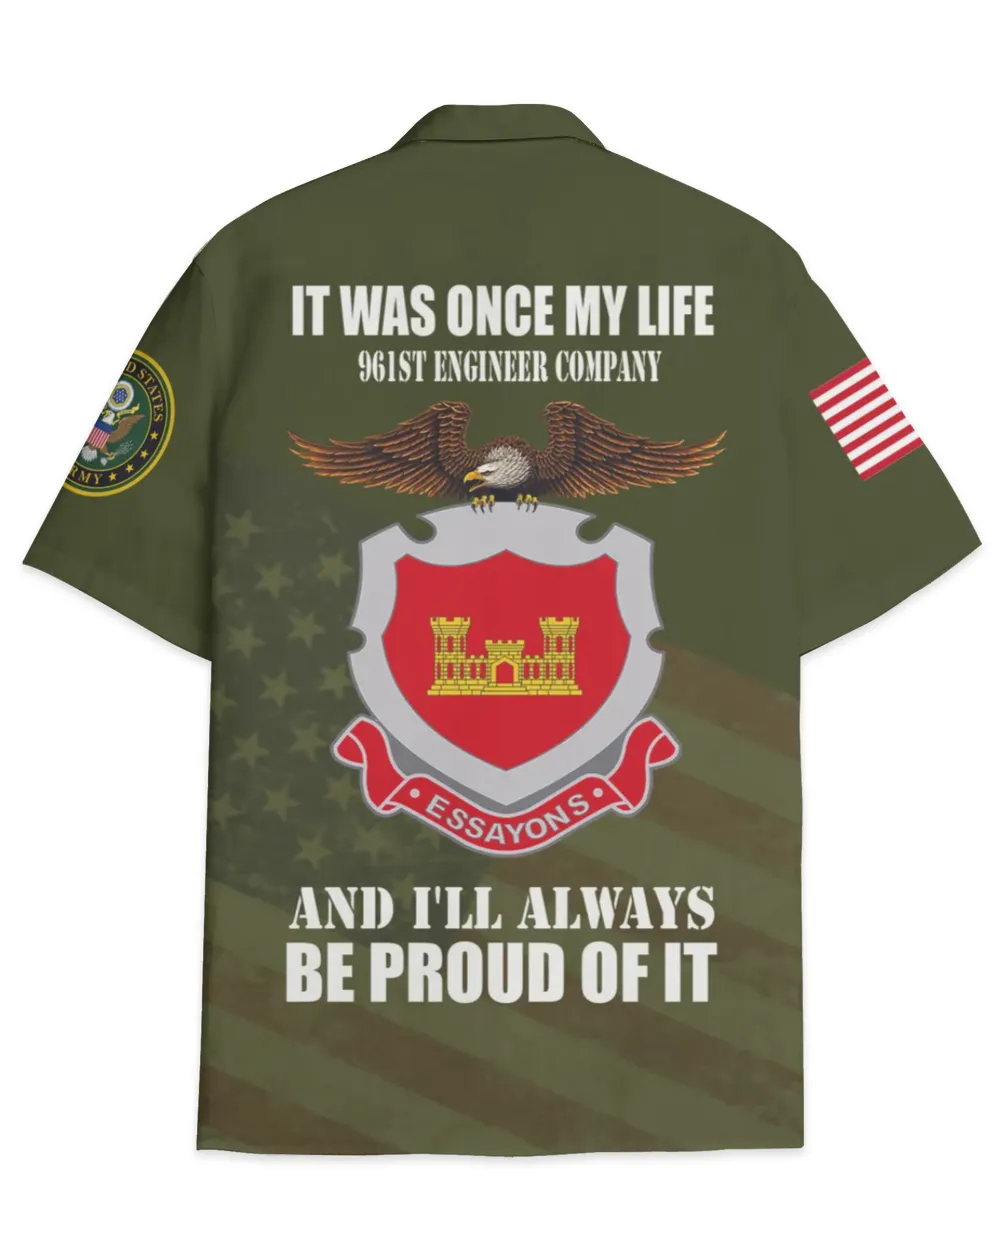 961st Engineer Company Hawaiian Shirt